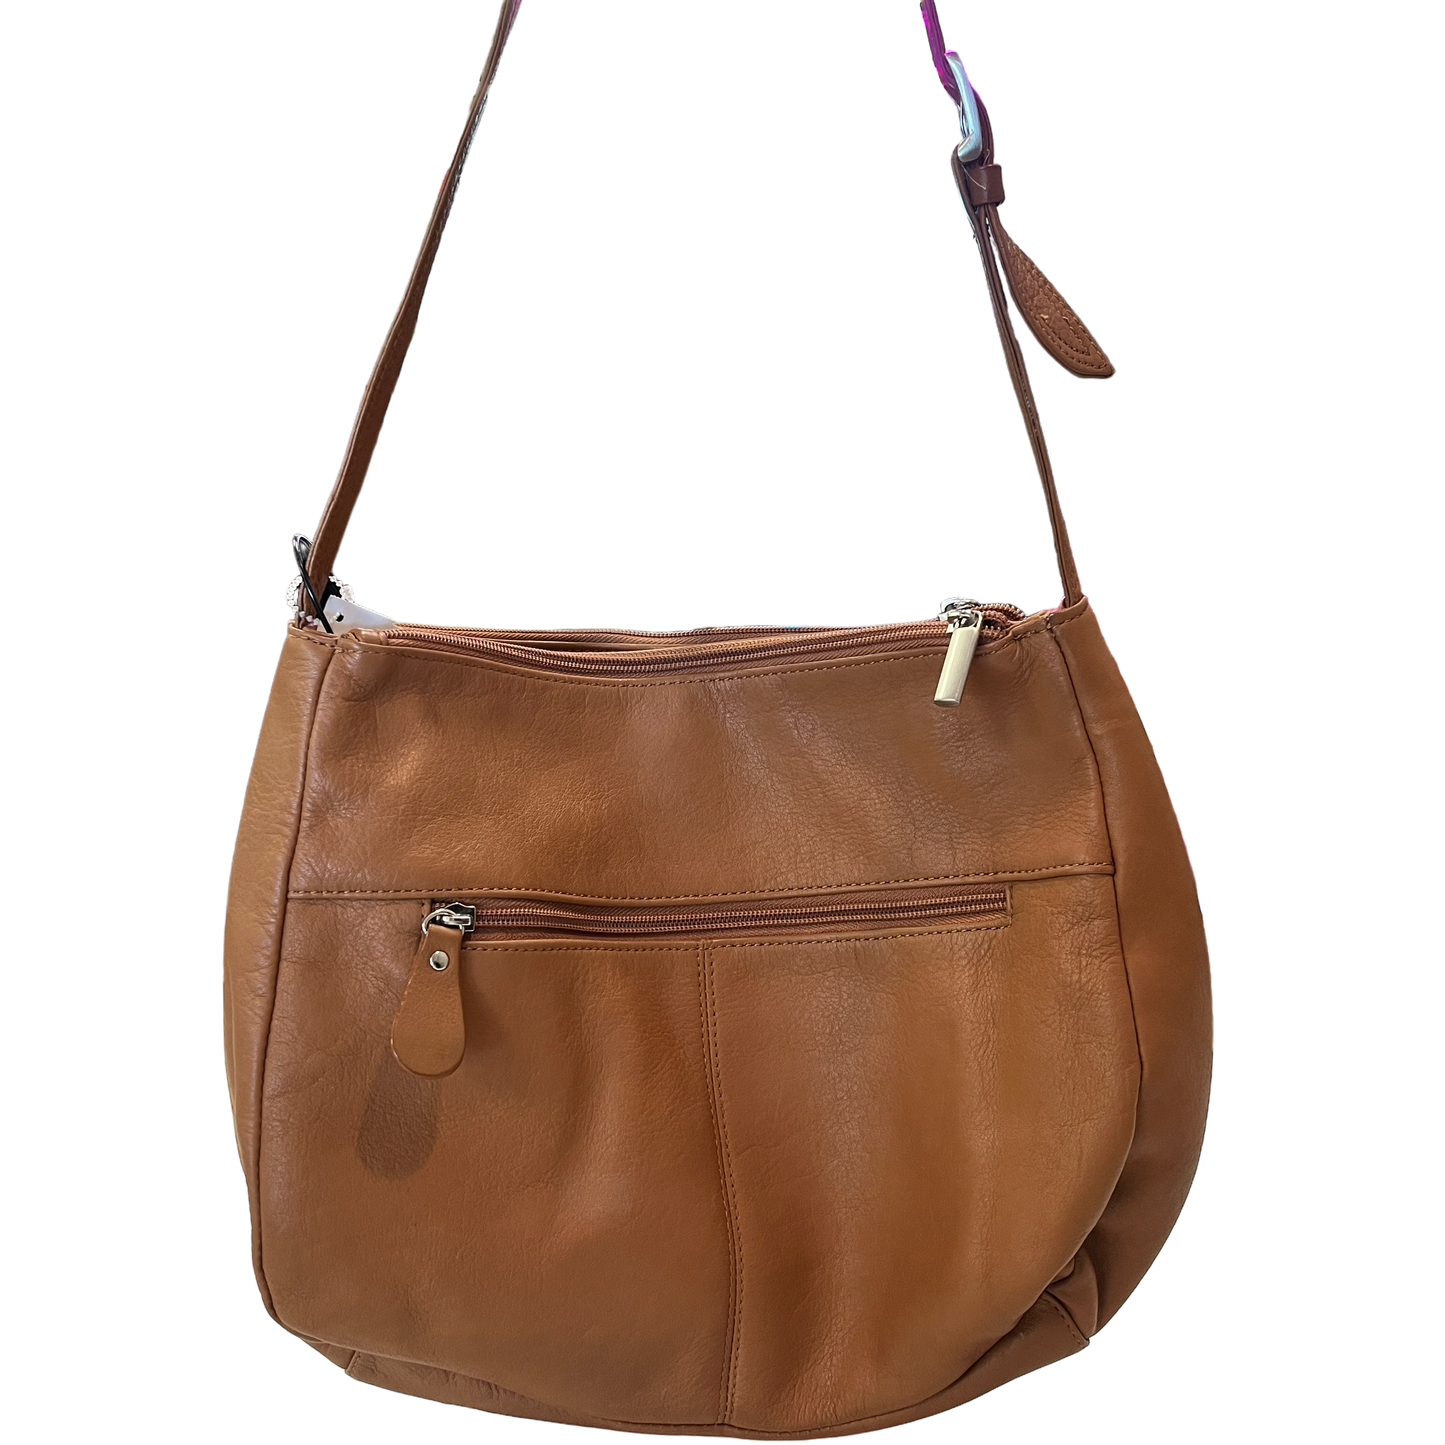 Handbag Leather By Giani Bernini  Size: Medium